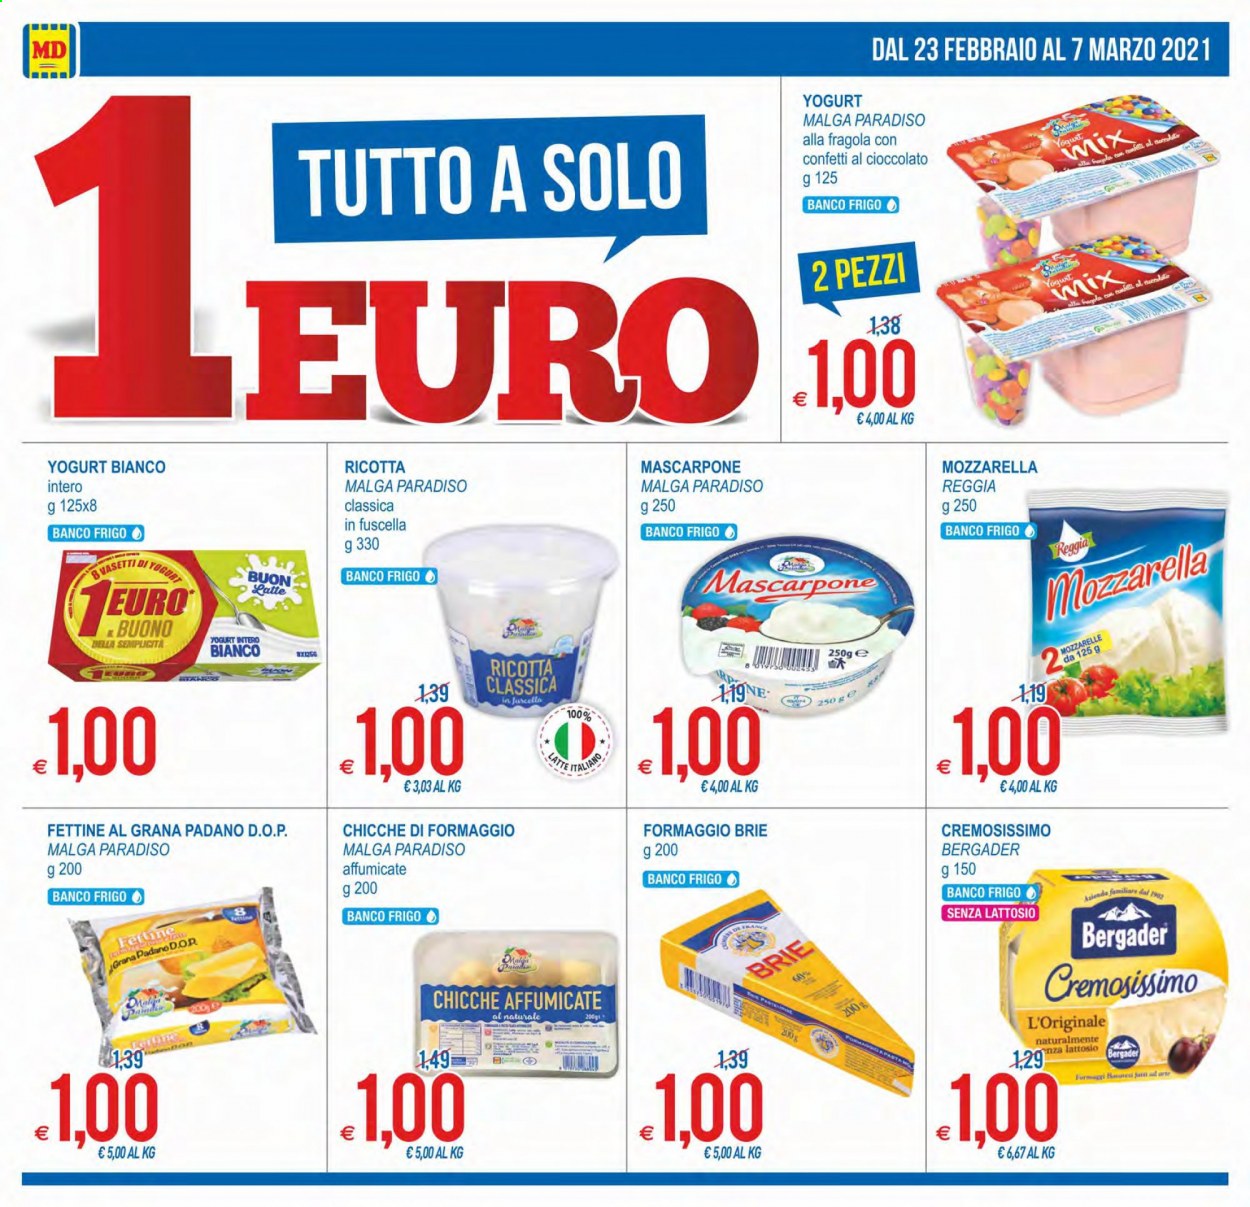 thumbnail - Volantino MD Discount - 23/2/2021 - 7/3/2021 - Prodotti in offerta - mozzarella, brie, ricotta, mascarpone, Grana Padano, latte, chicche. Pagina 2.